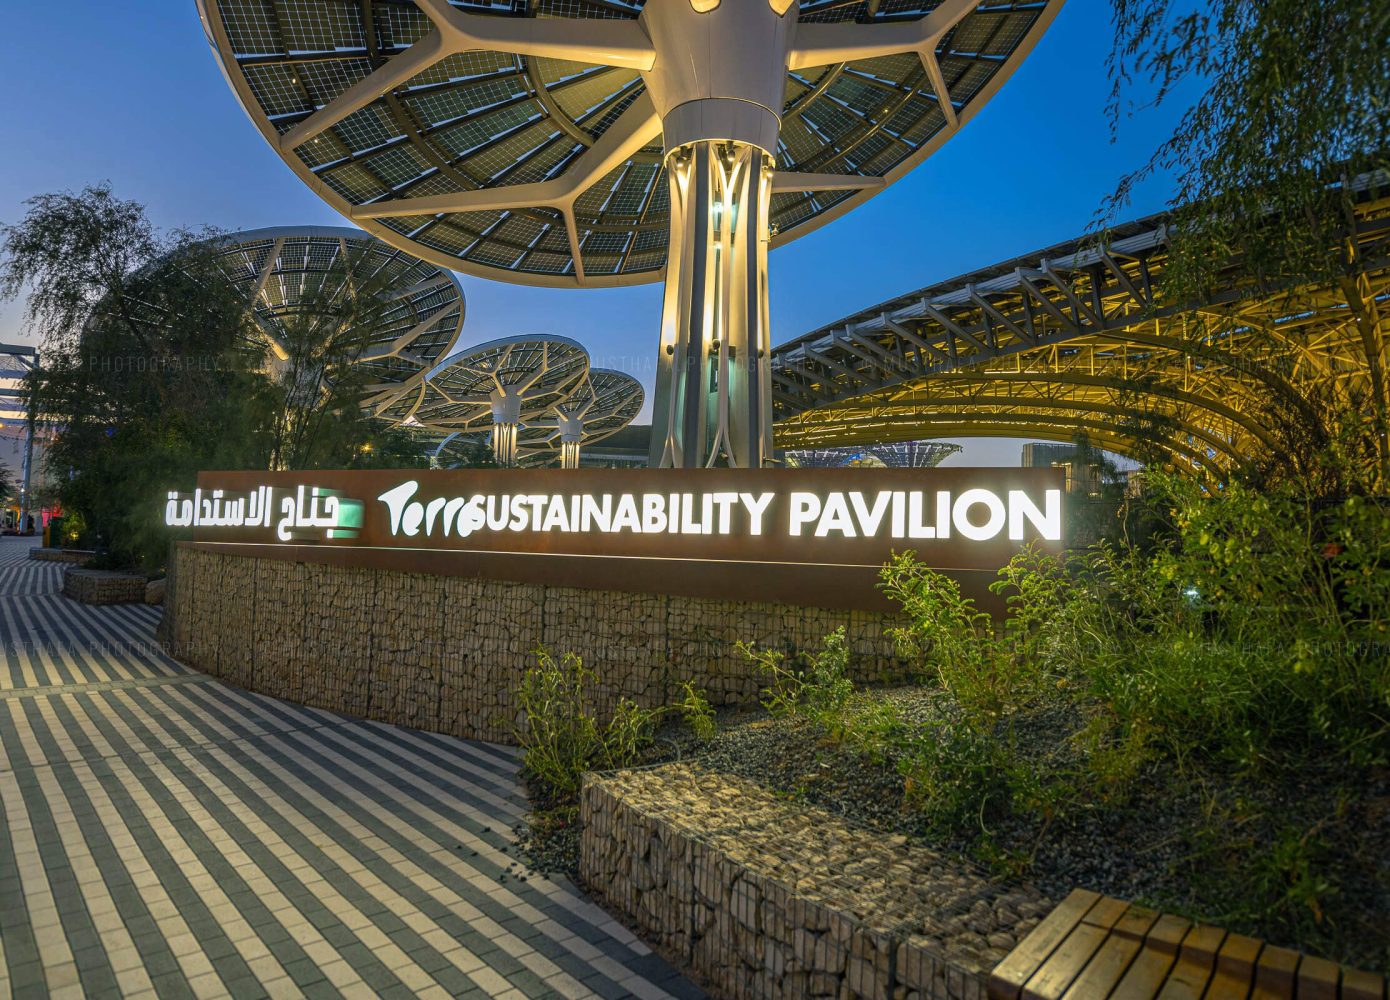 Terra The Sustainability Pavilion Expo 2020 Dubai Best photographer photos from Dubai musthafa photography